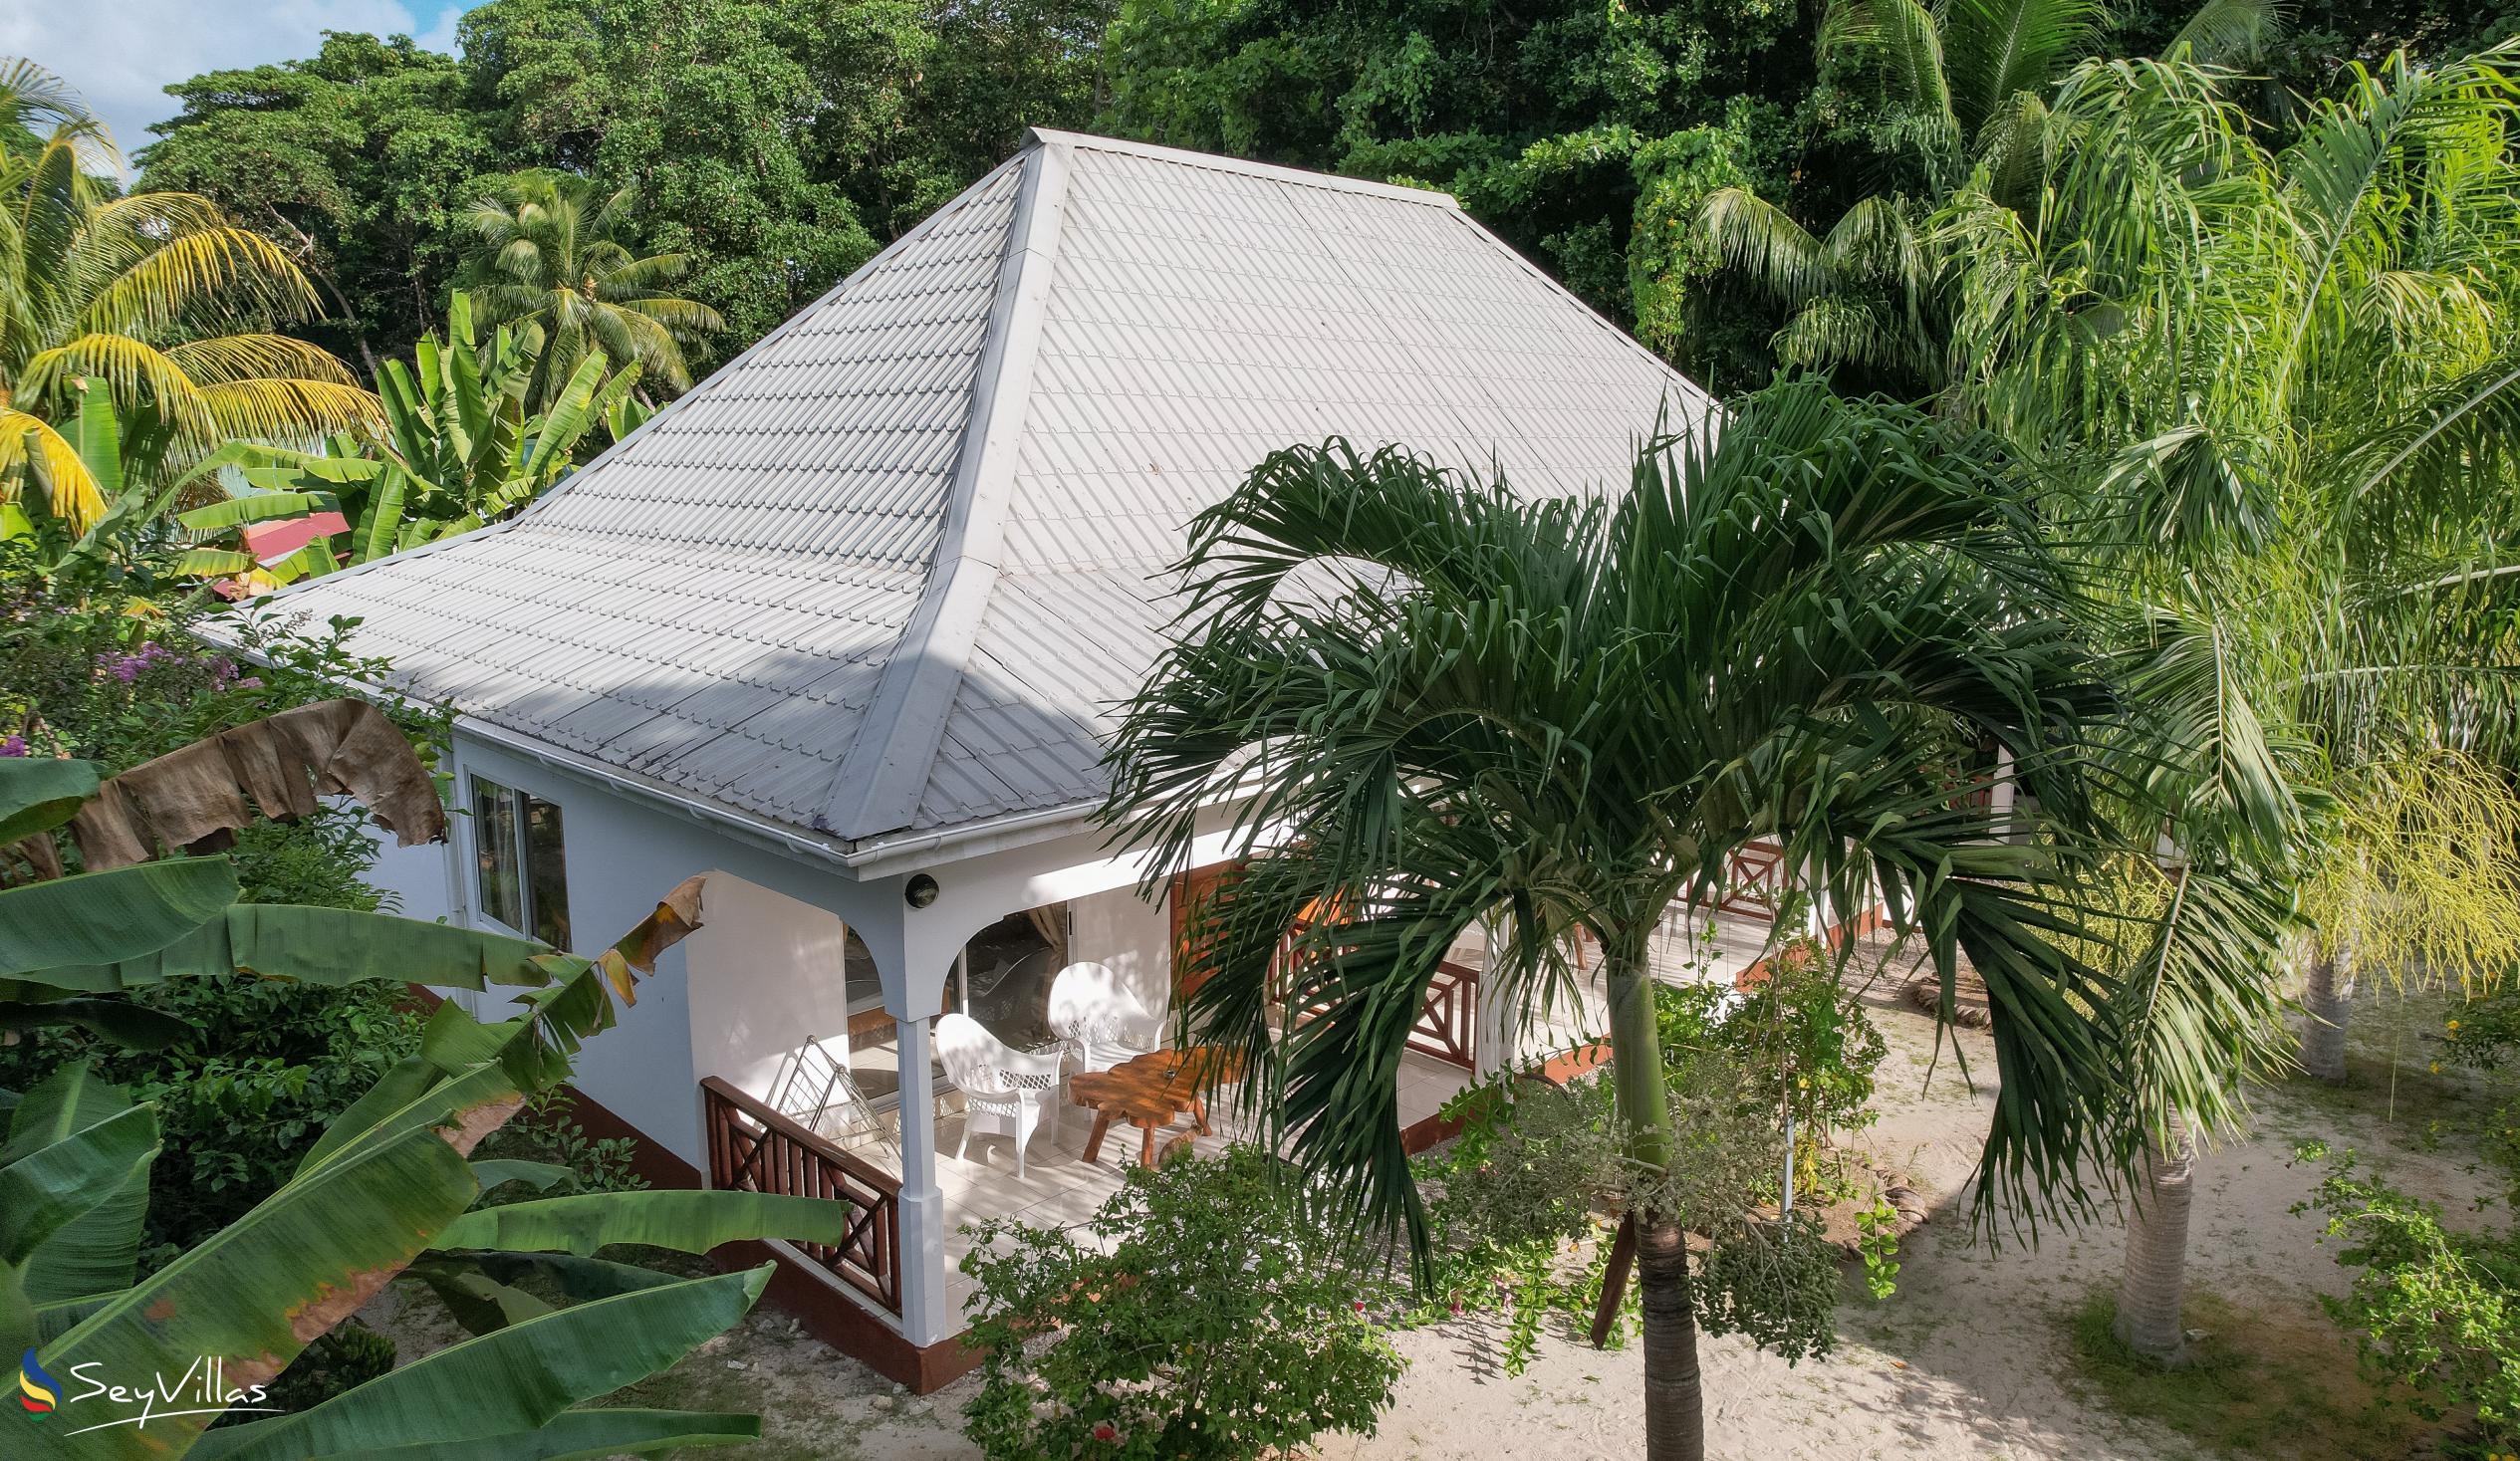 Foto 13: Villa Veuve - Aussenbereich - La Digue (Seychellen)